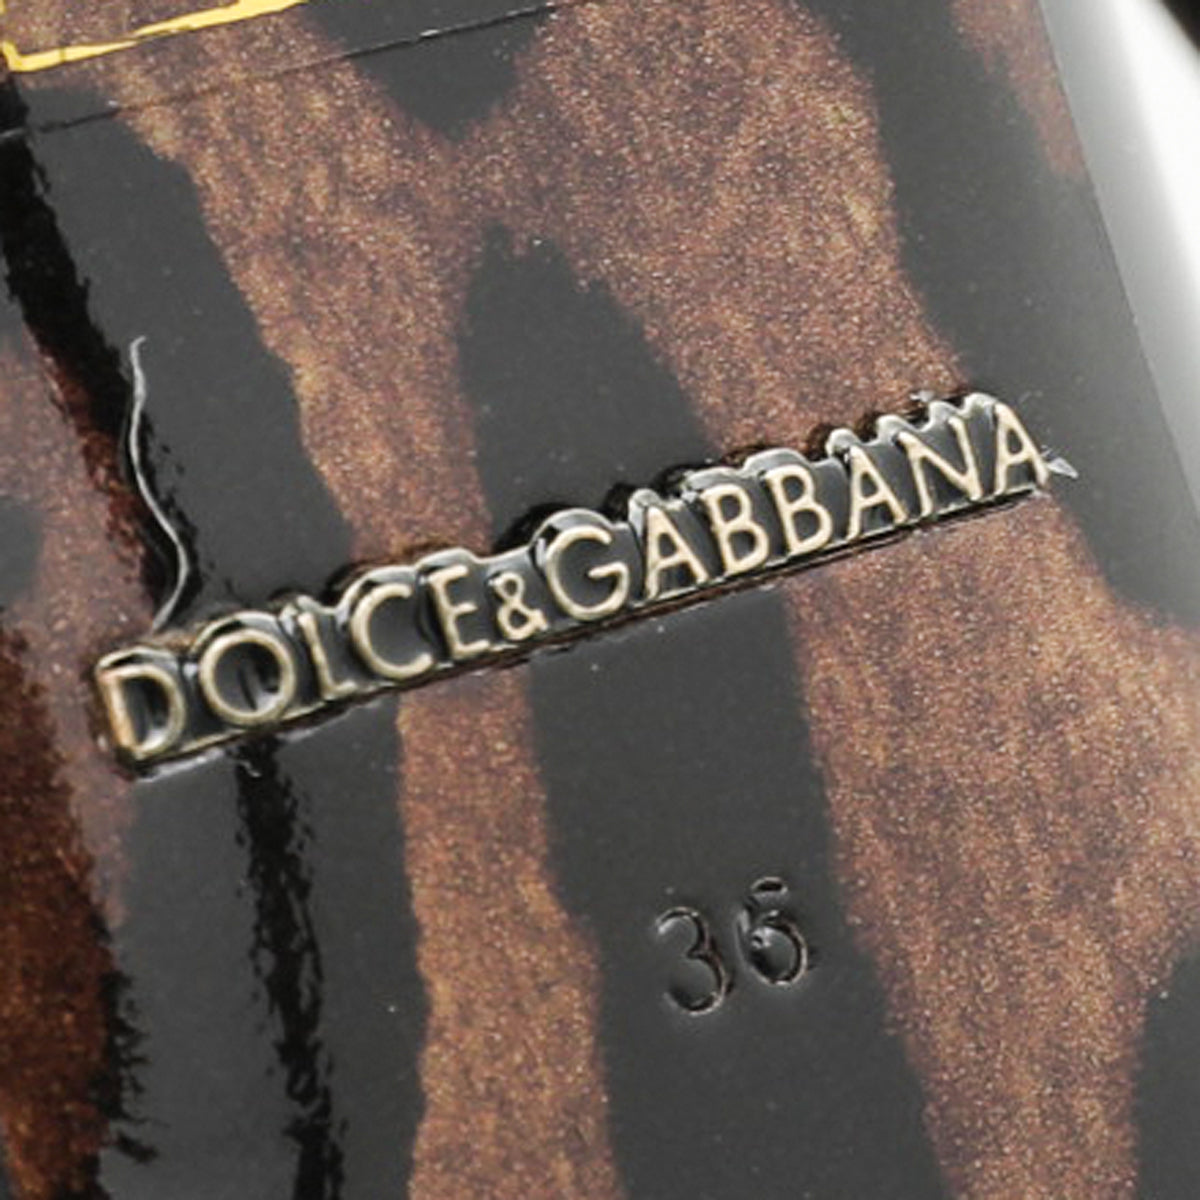 Dolce & Gabbana Black Triple Strap Pump 36